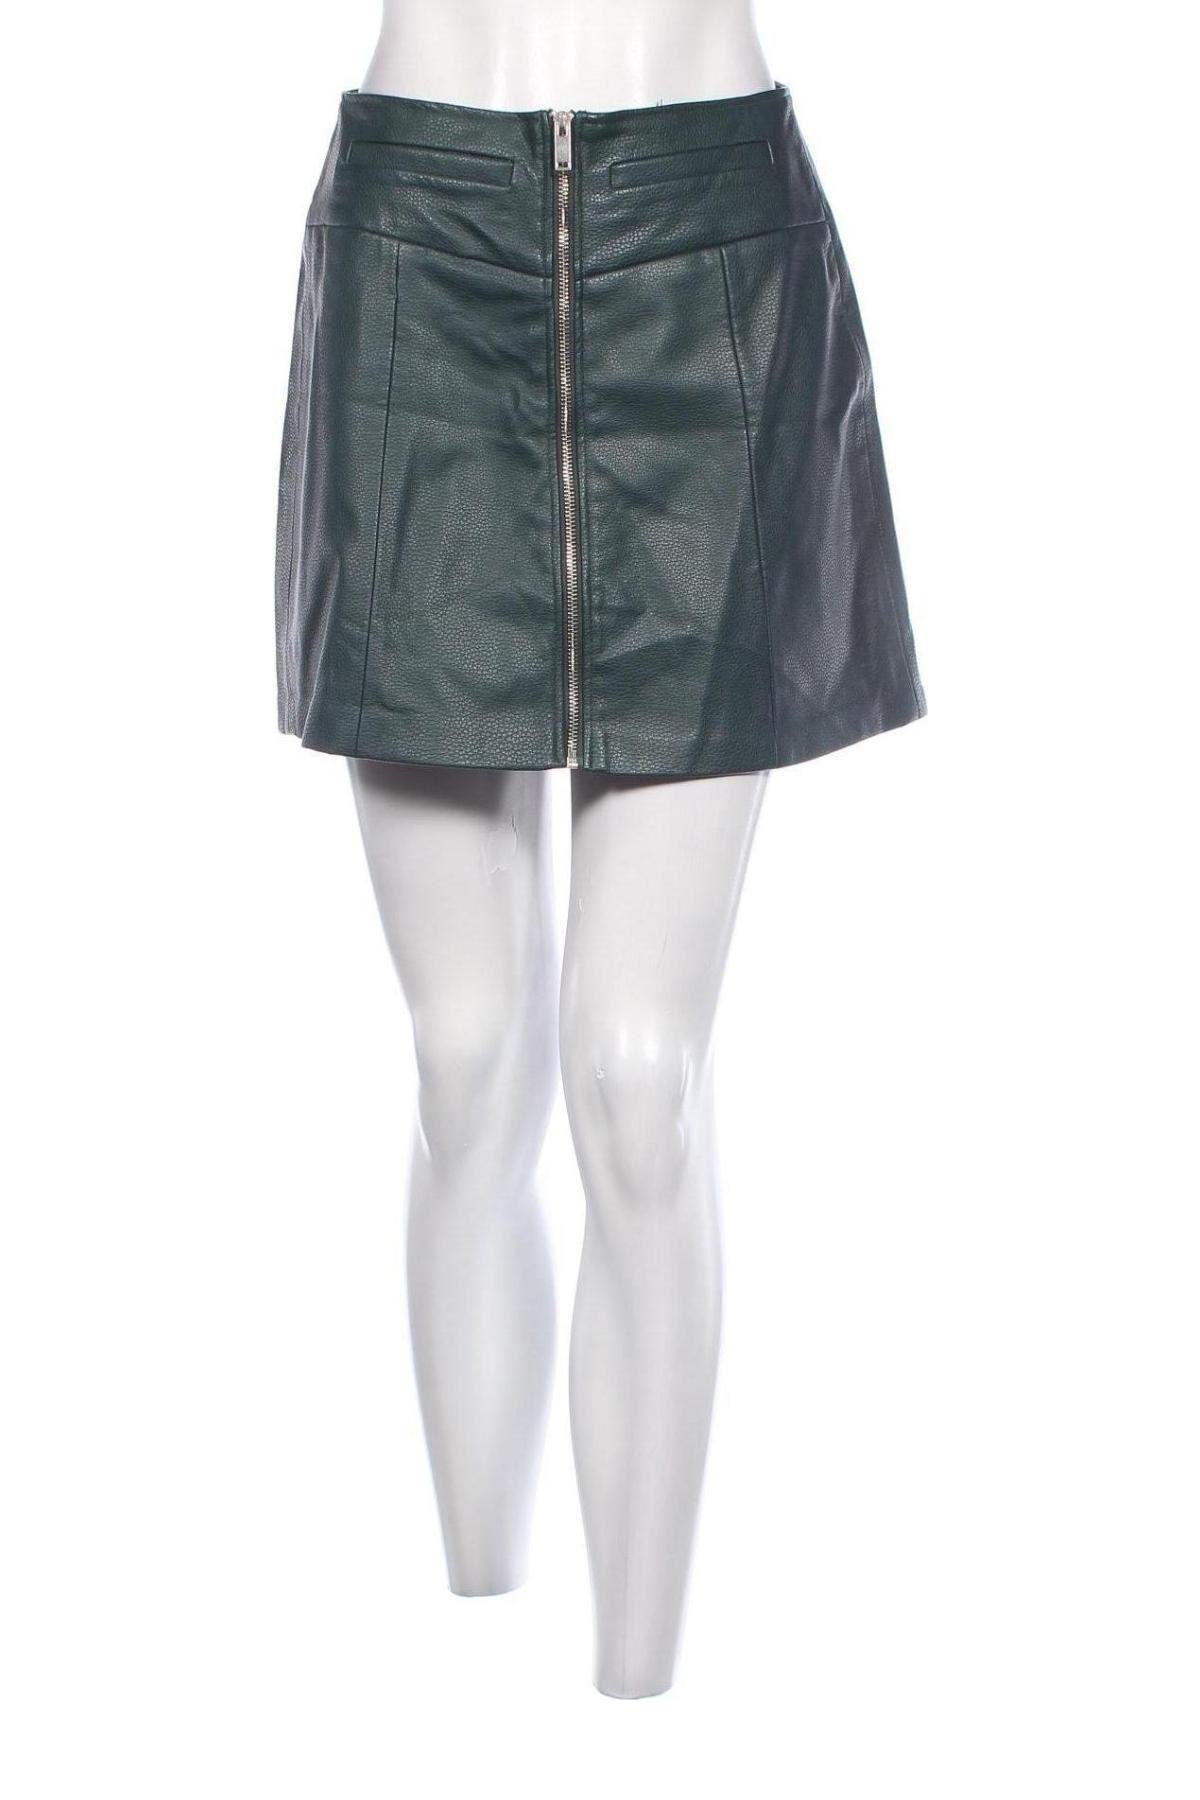 Δερμάτινη φούστα Bershka, Μέγεθος M, Χρώμα Πράσινο, Τιμή 4,00 €